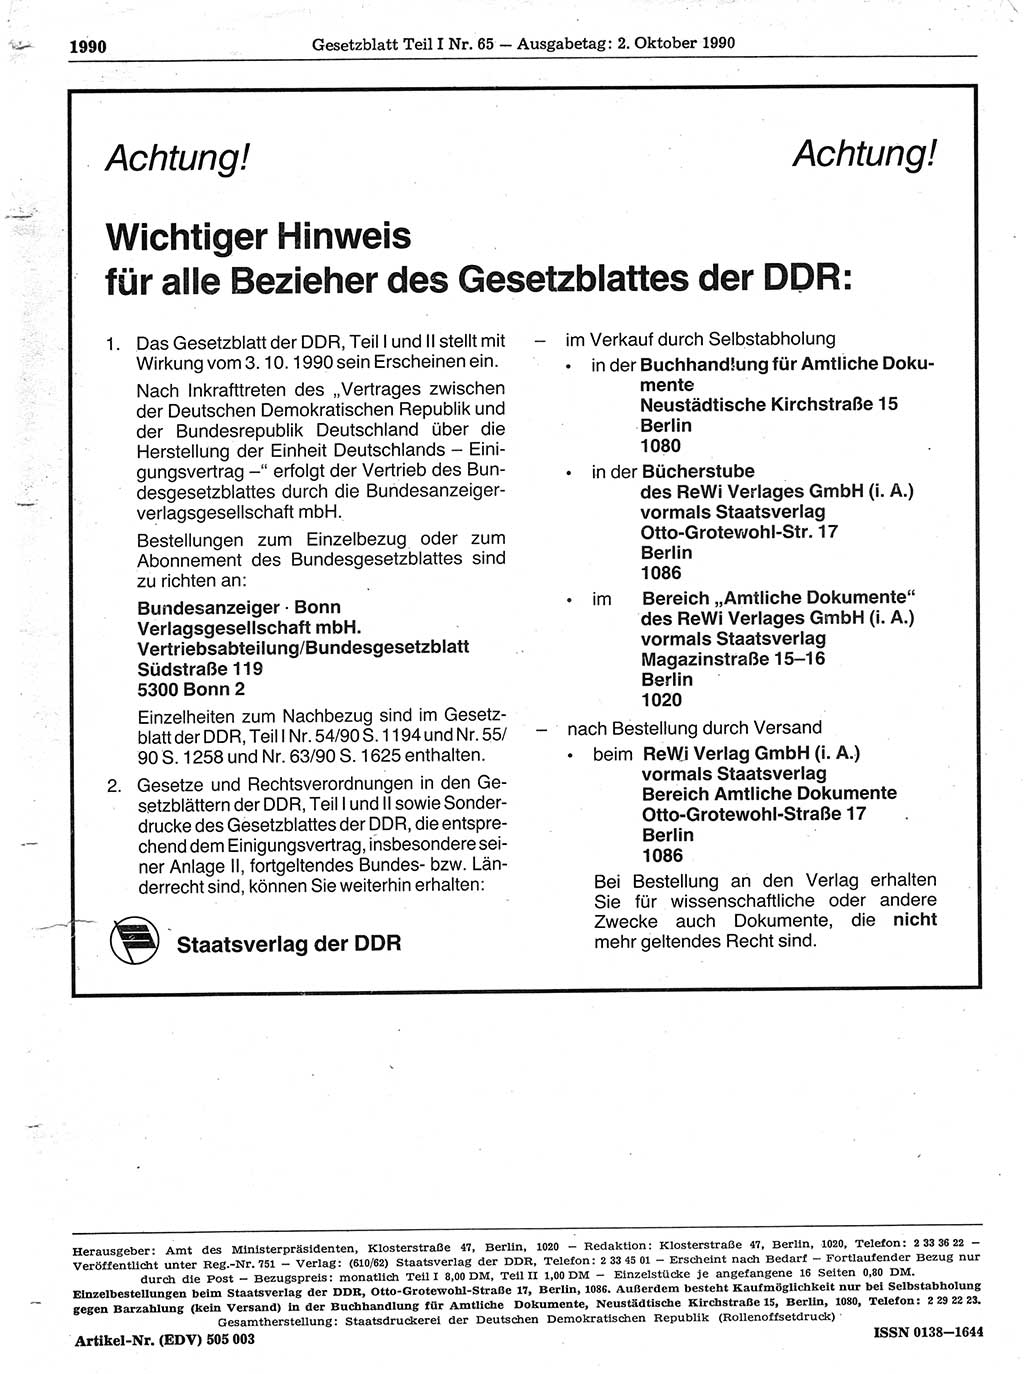 Gesetzblatt (GBl.) der Deutschen Demokratischen Republik (DDR) Teil Ⅰ 1990, Seite 1990 (GBl. DDR Ⅰ 1990, S. 1990)